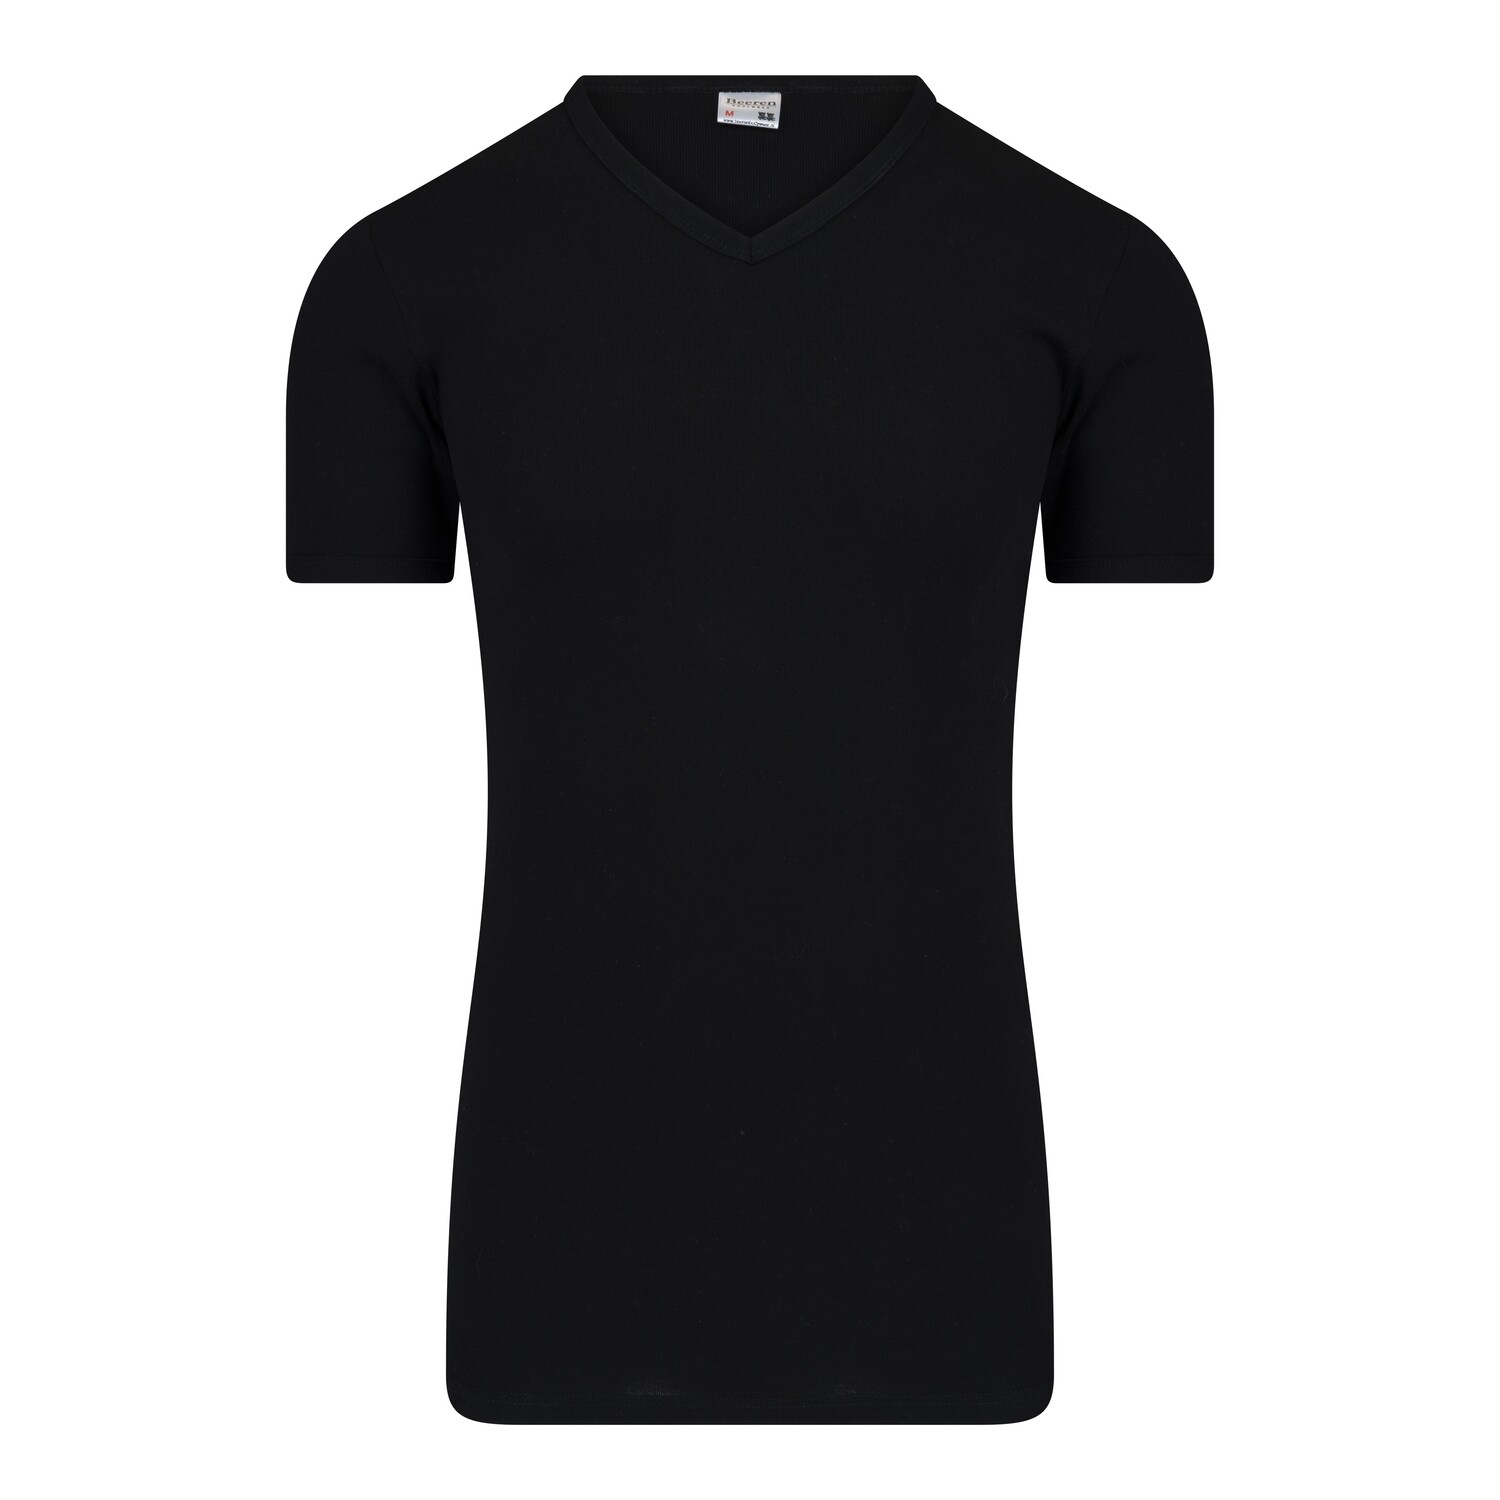 (11-137) Heren T-shirt R-hals M3000 extra lang zwart M